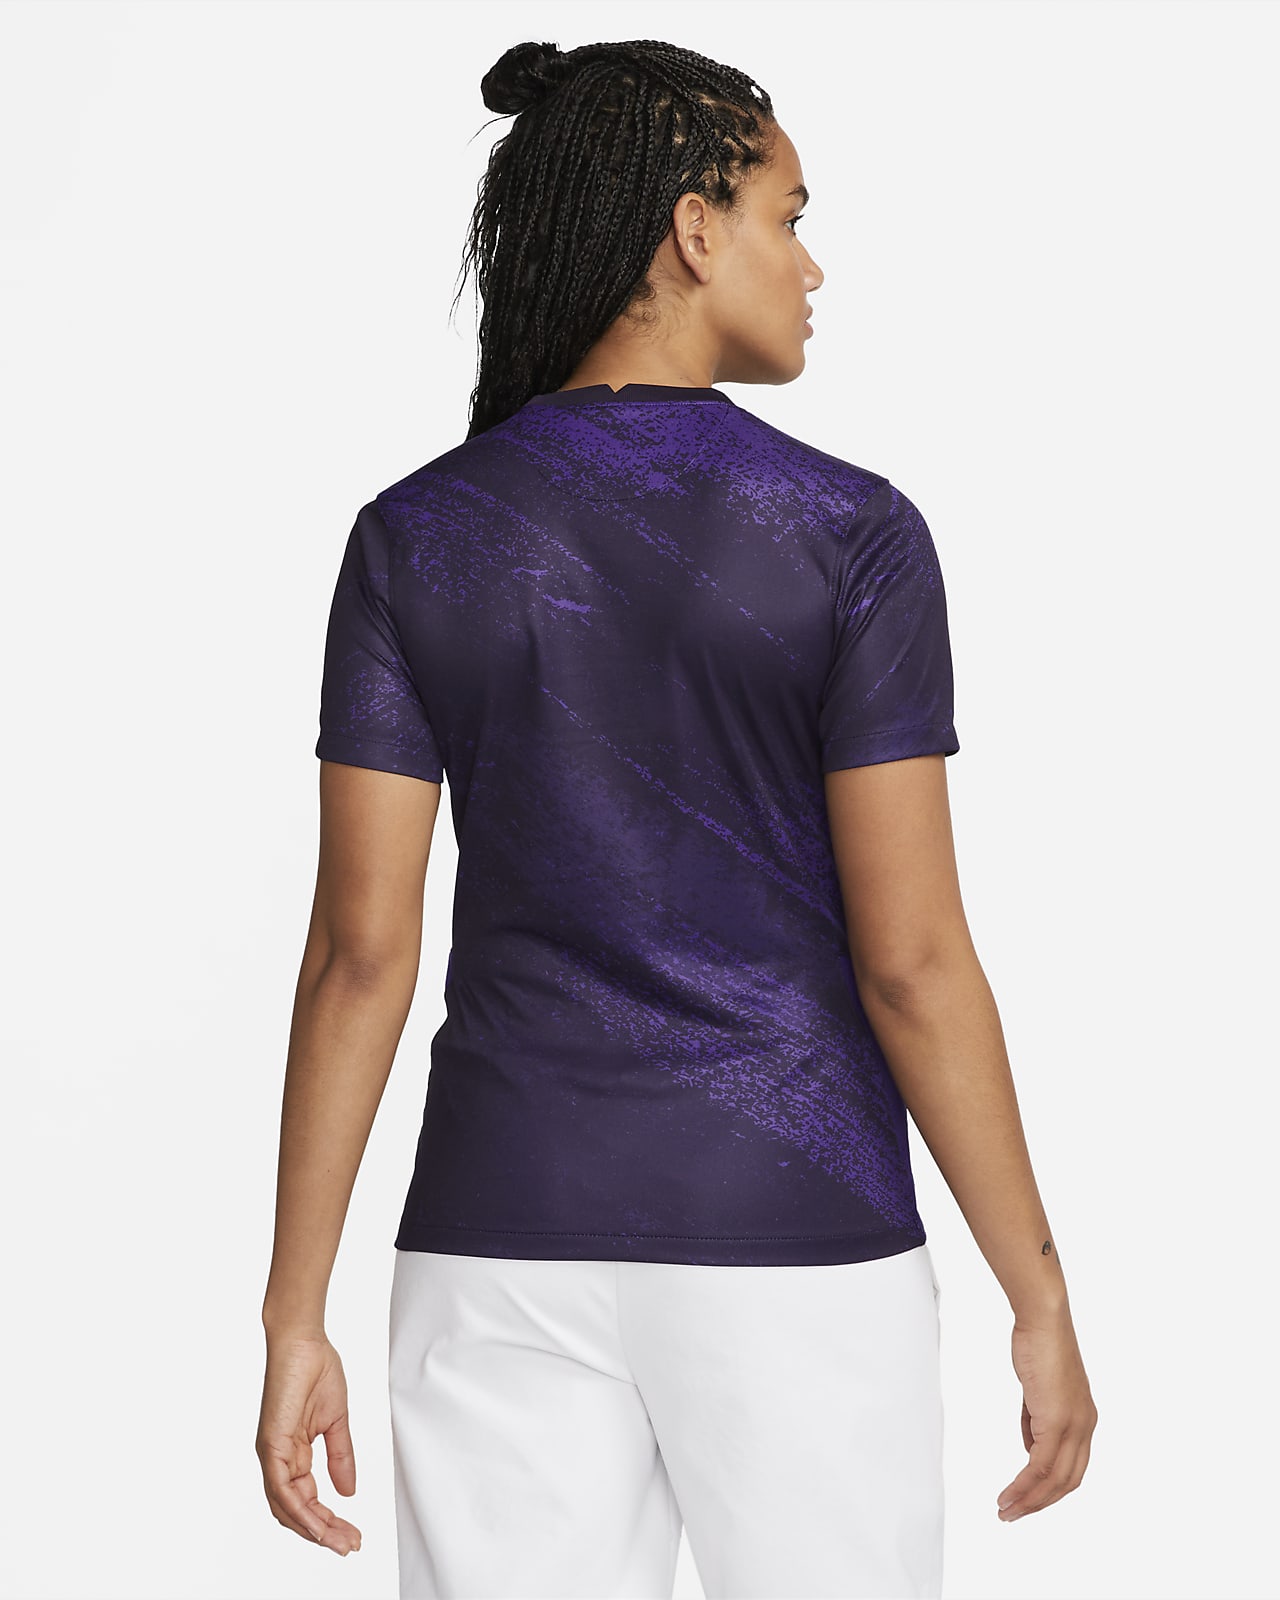 Orlando Pride Club Fleece Nike Men's Soccer Hoodie in Purple